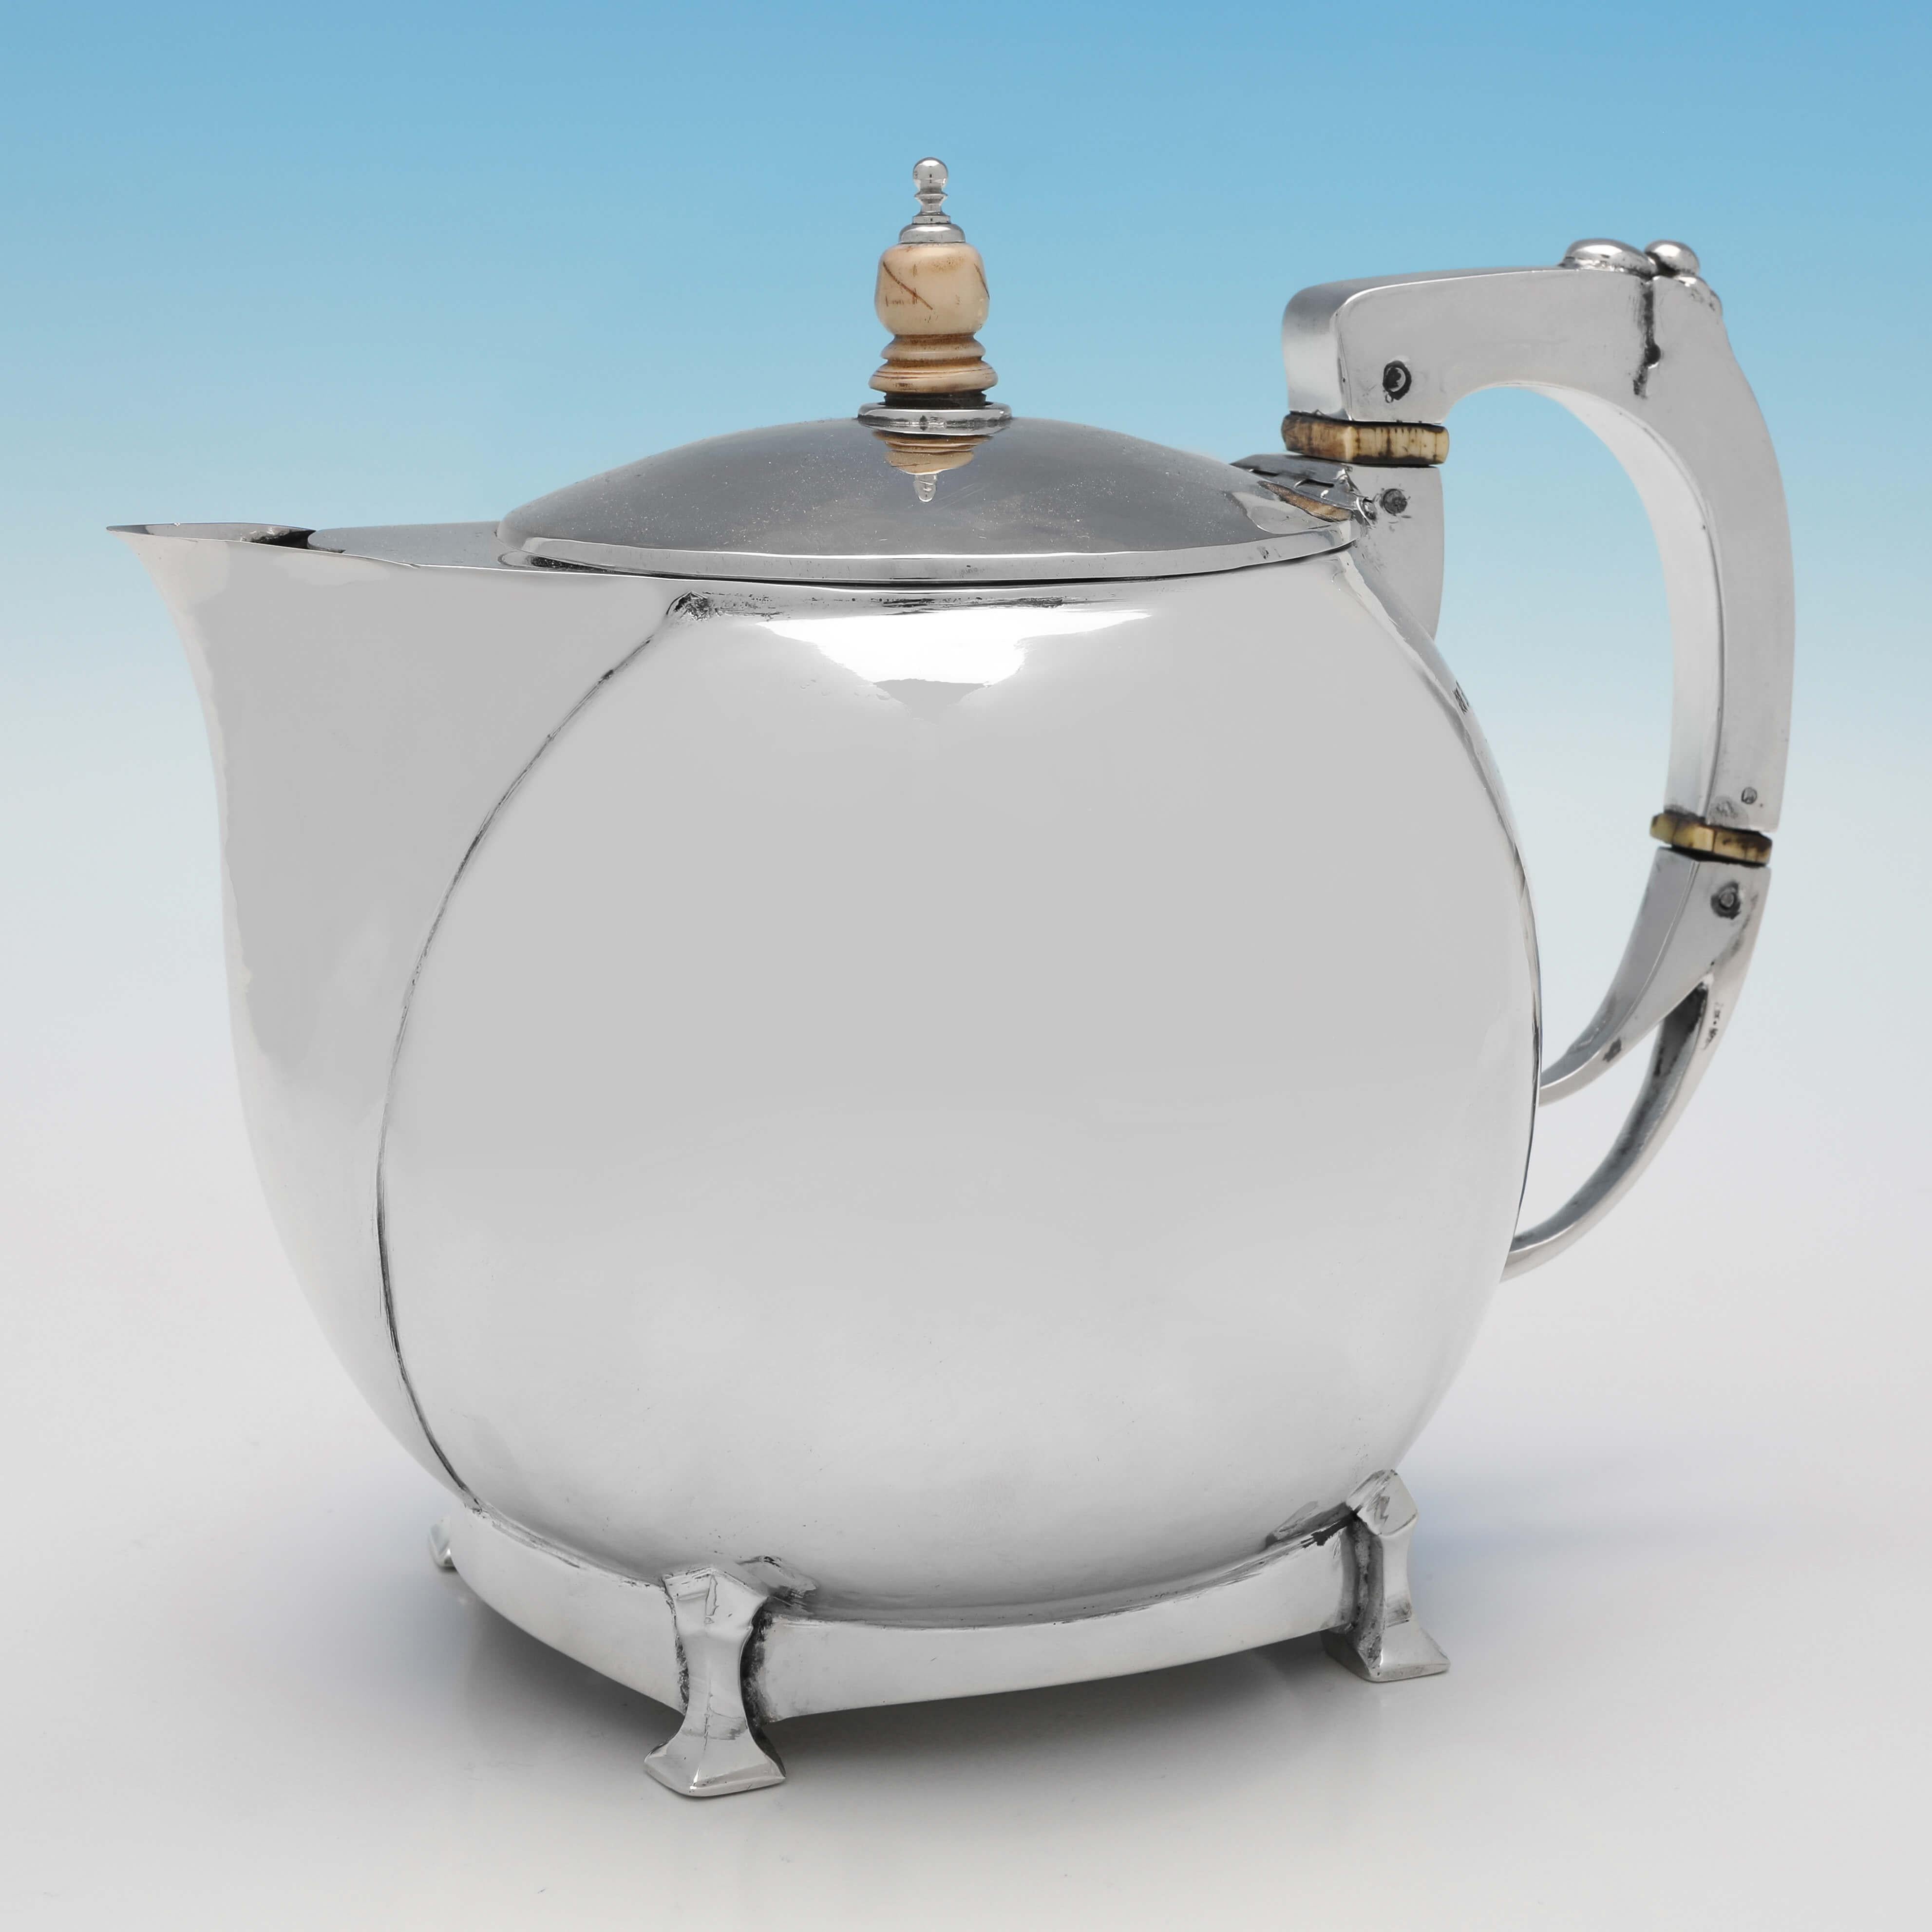 Poinçonné à Birmingham en 1929 (le pot à eau chaude a été poinçonné en 1935) par William Henry Creswick, ce magnifique service à thé en argent massif de 4 pièces est un superbe exemple du design Arts & Crafts. La théière mesure 17 cm de haut, 19,5